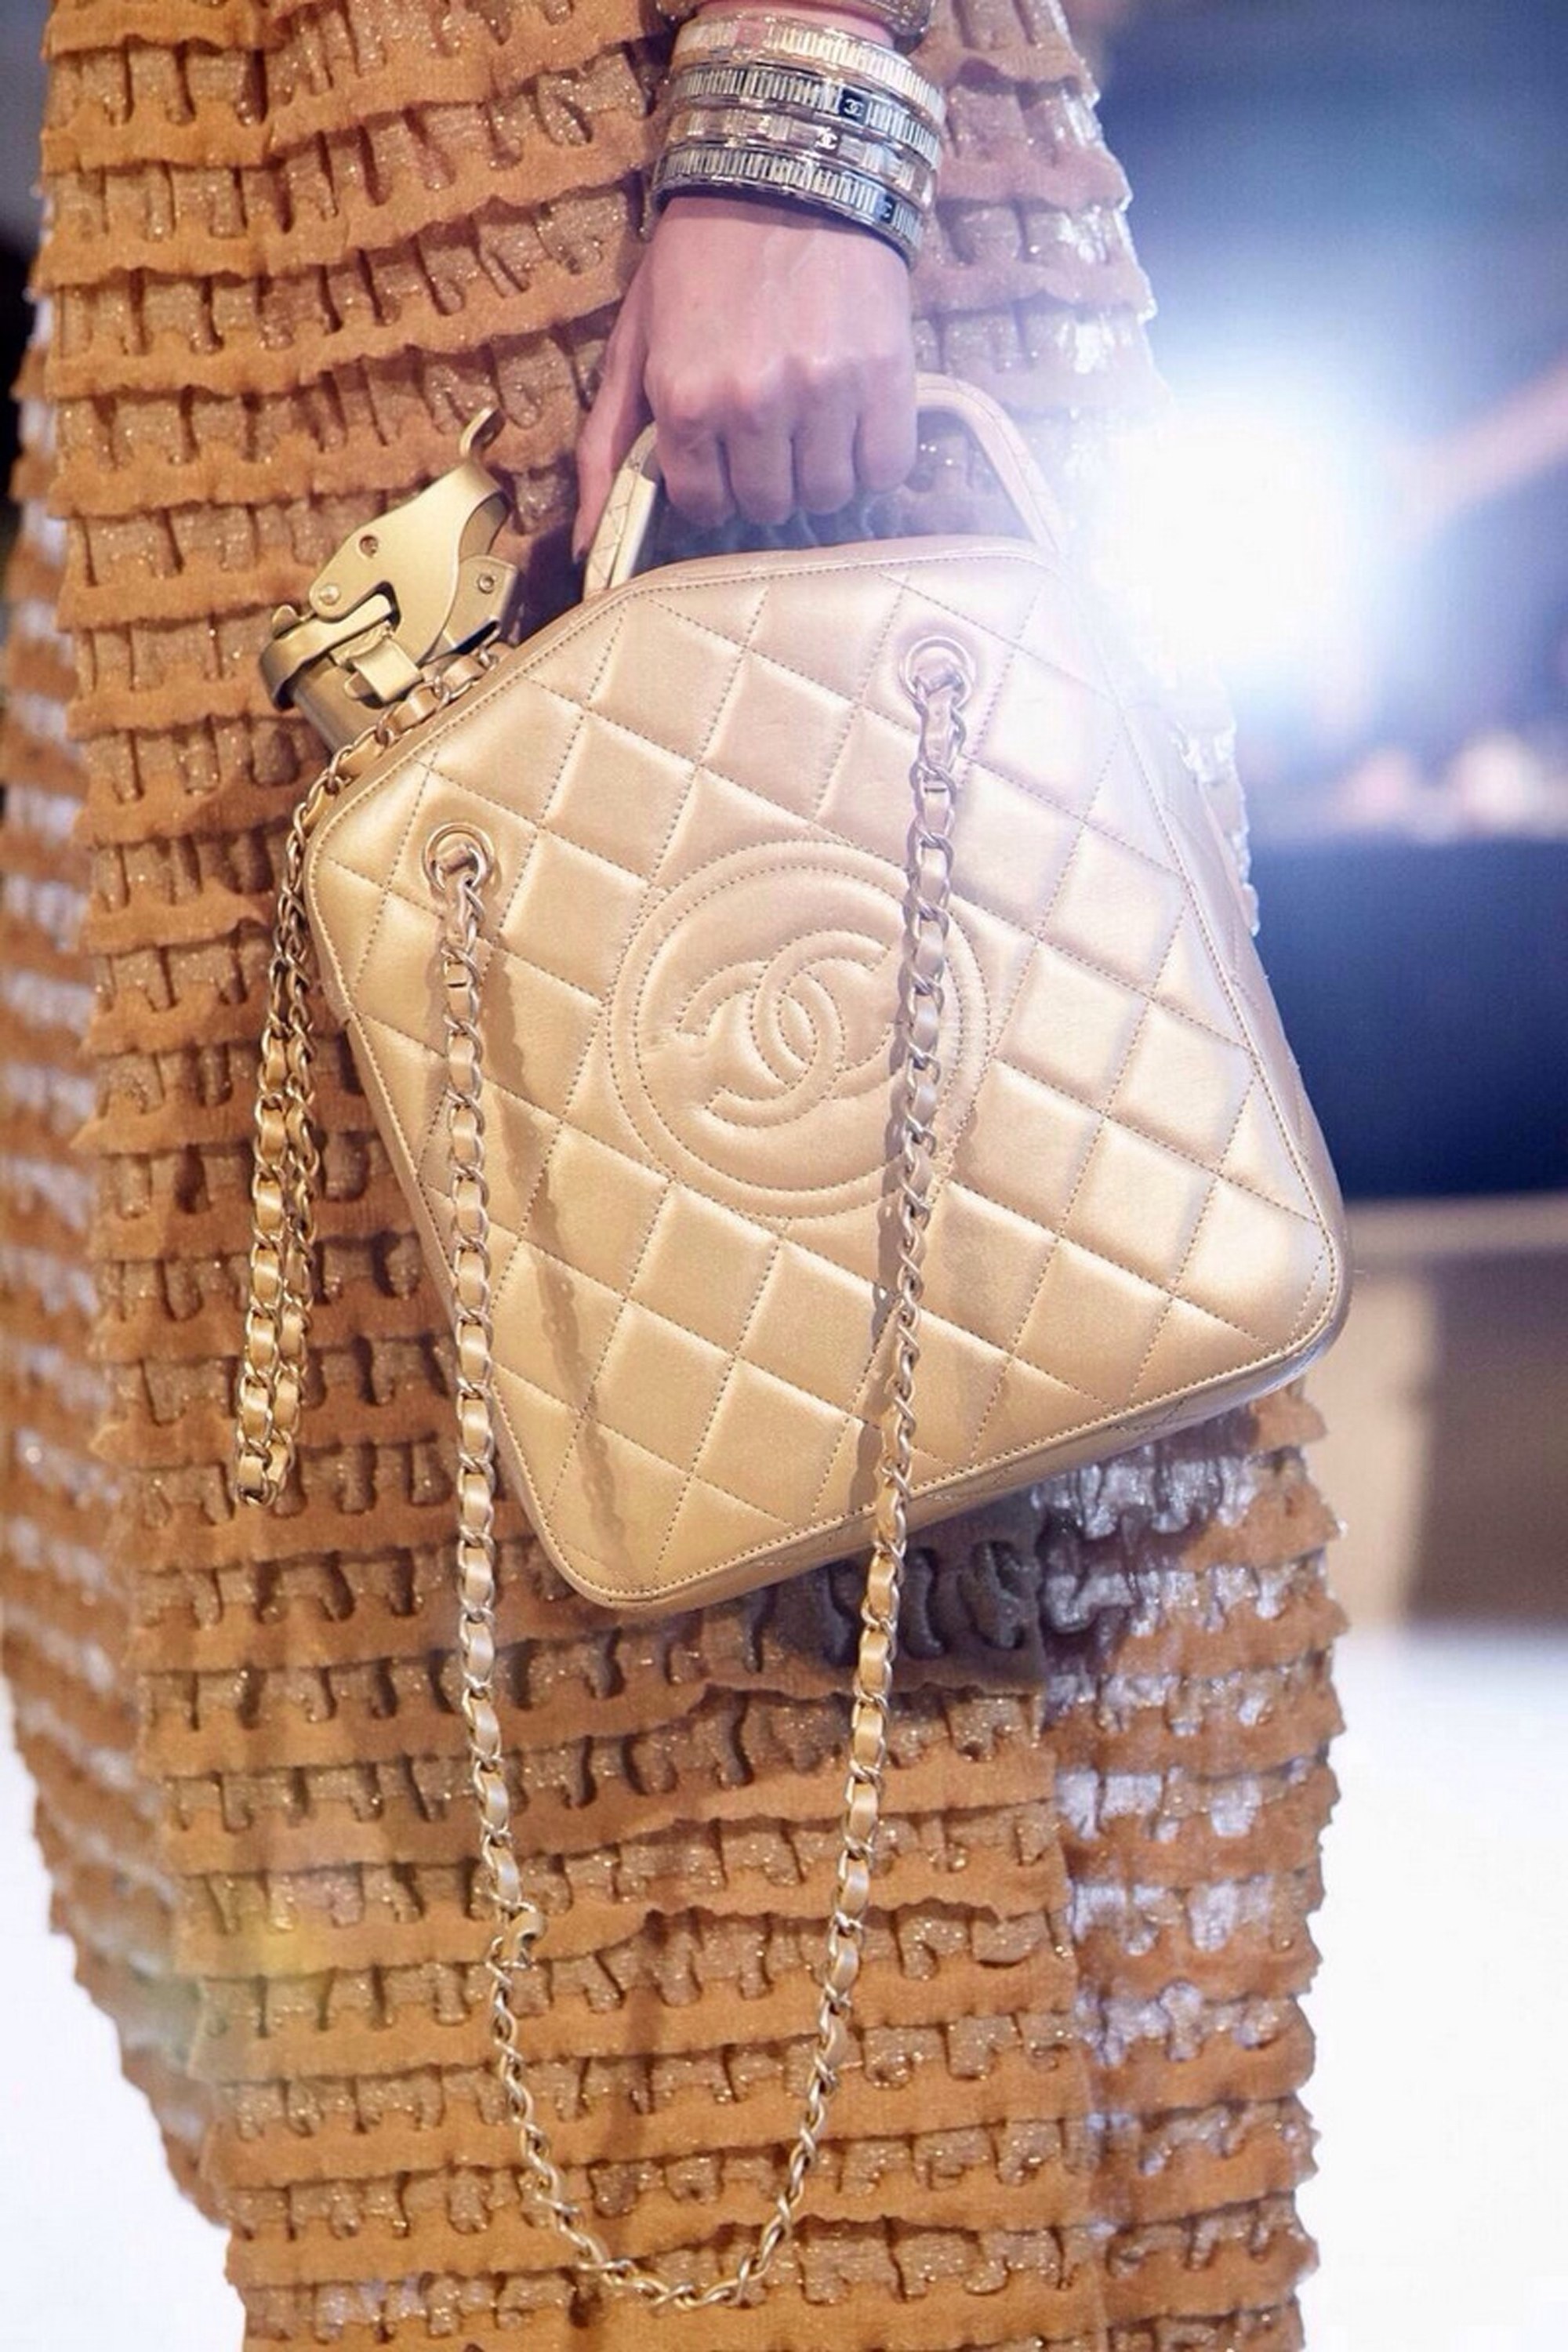 Đến với xử sở dầu mỏ Dubai; chiếc túi xách may họa tiết quả trám quen thuộc của Chanel được "biến hình" thành chiếc can chứa dầu nhớt.